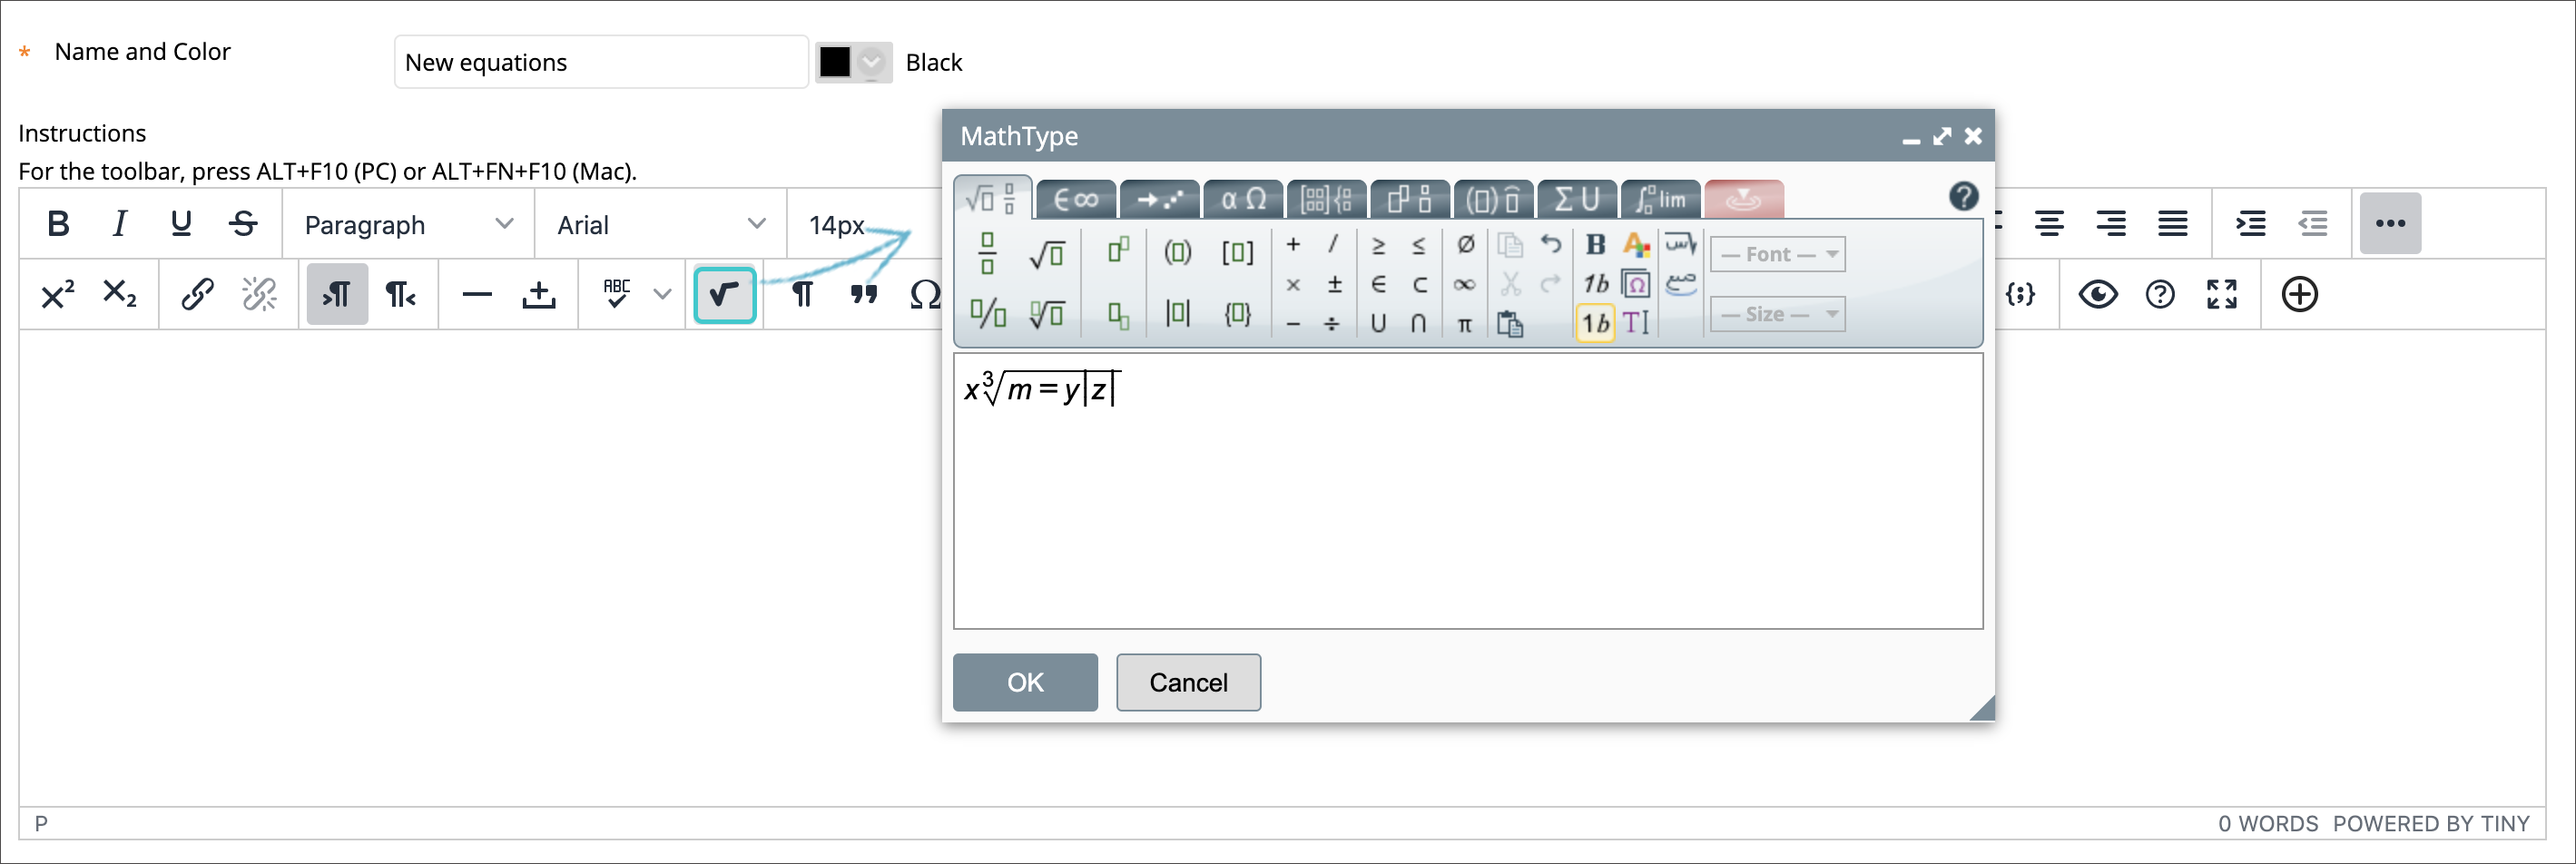 Het pictogram wiskundige editor wordt geselecteerd tussen de bewerkpictogrammen in de werkbalk van de editor 